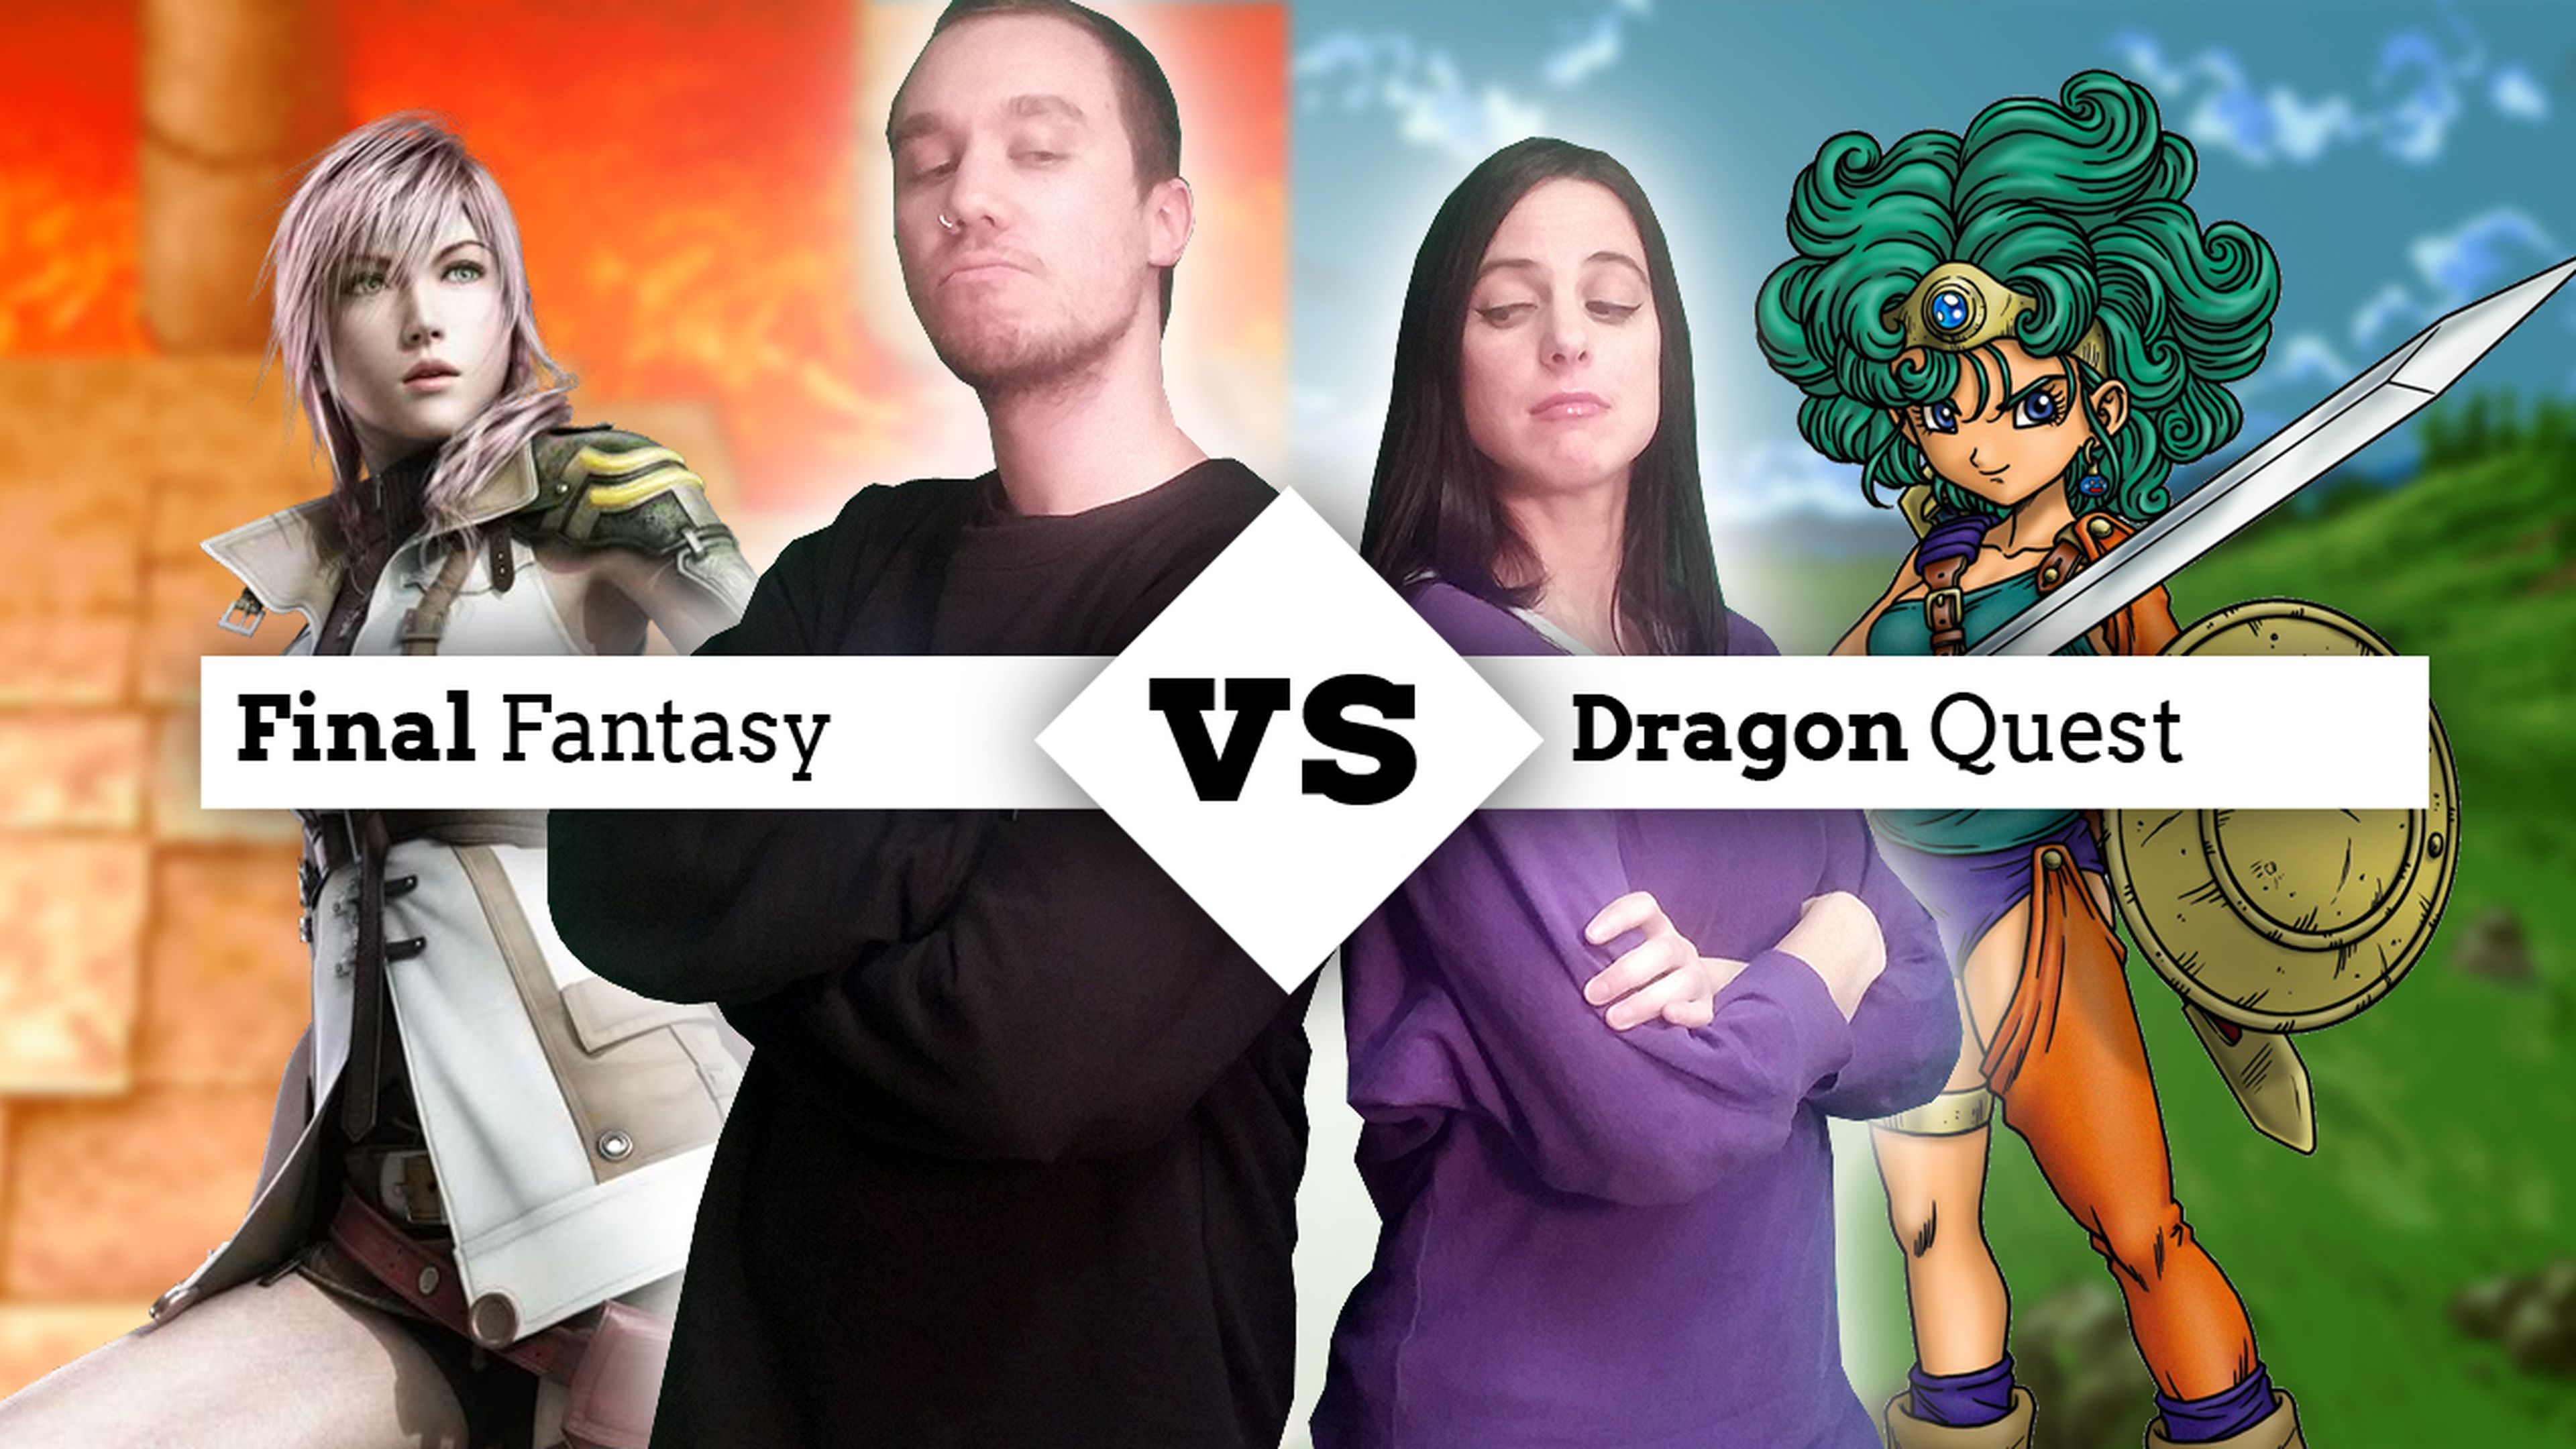 Cara a cara Dragon Quest vs Final Fantasy